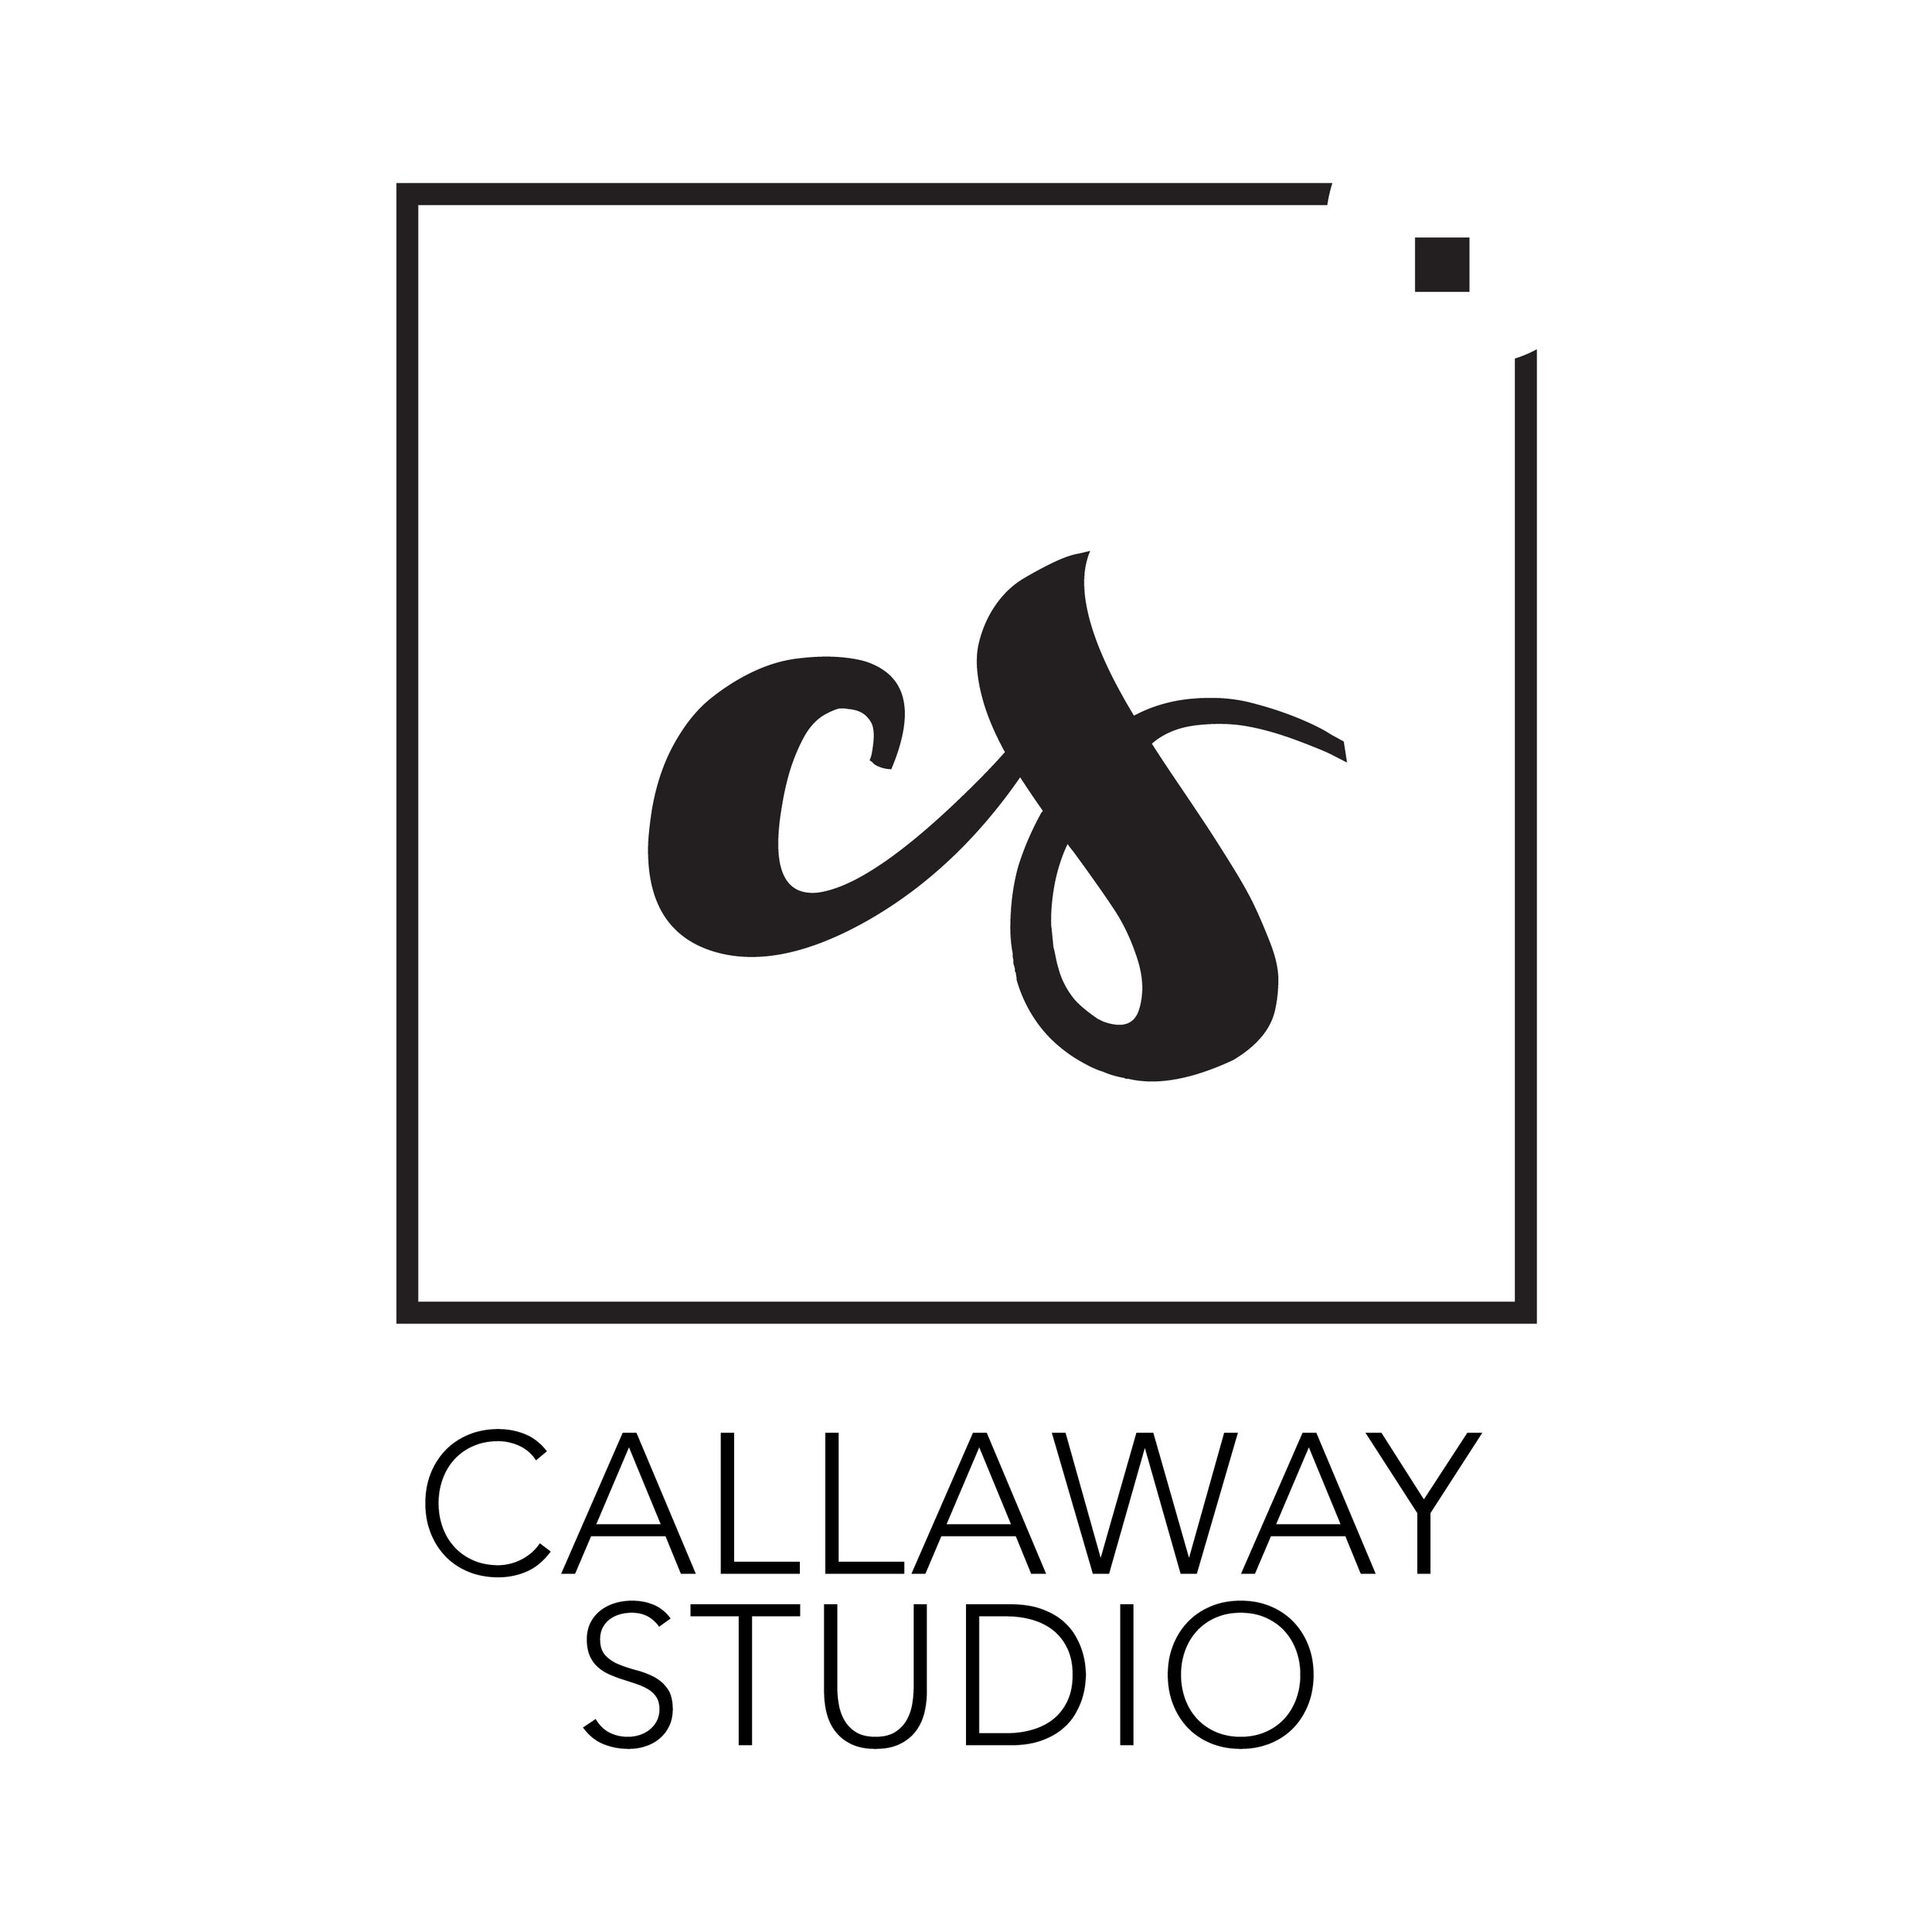 The Callaway Studio